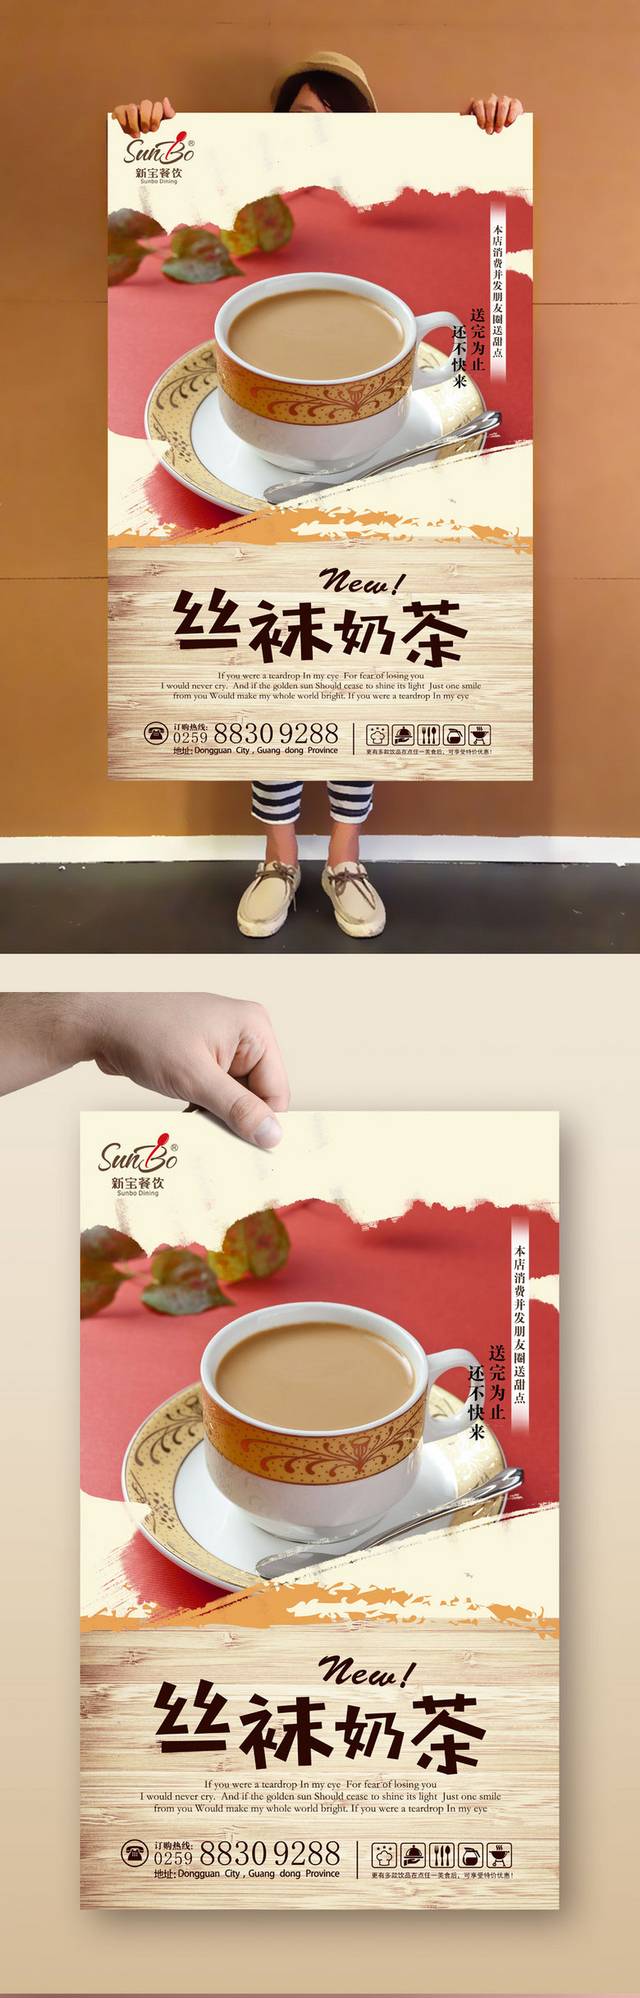 奶茶店原创海报设计